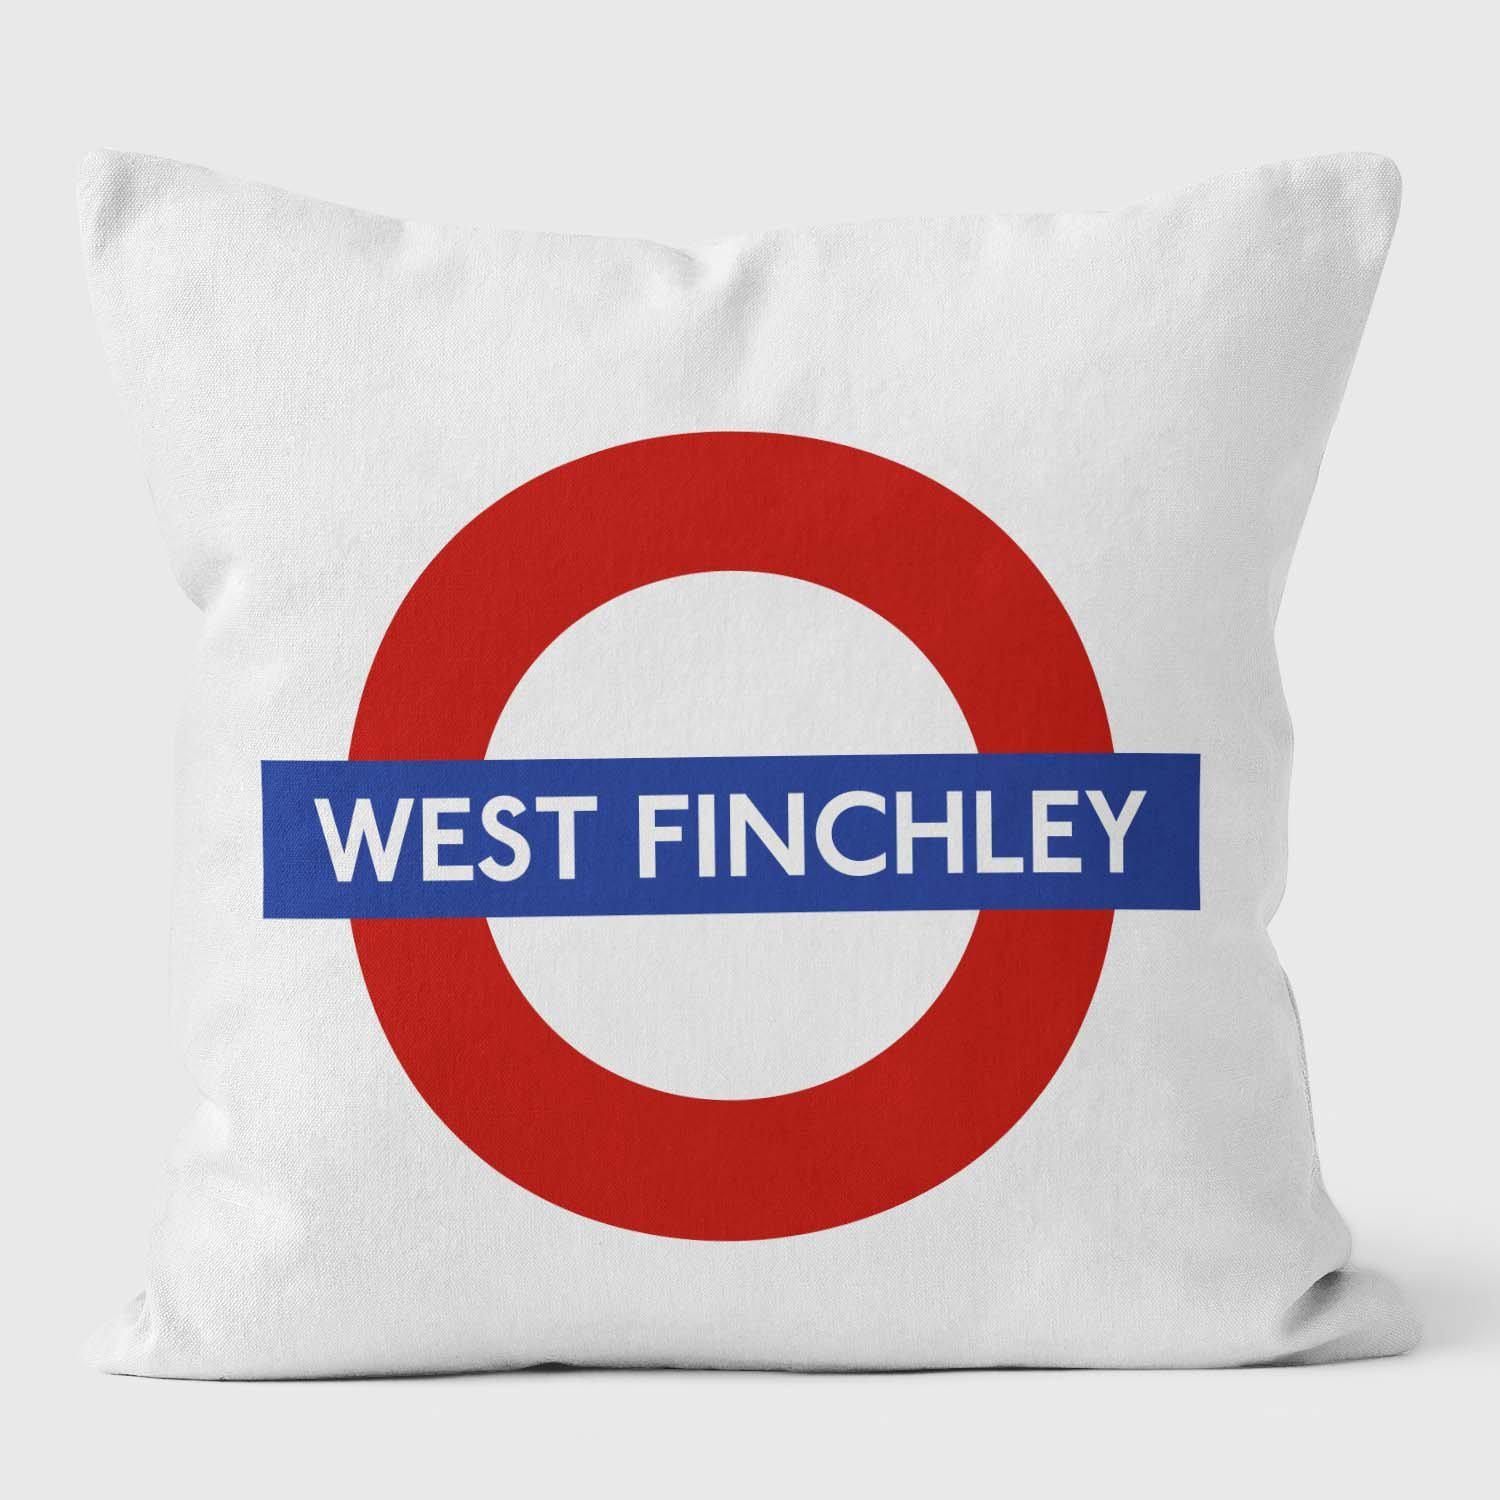 West Finchley London Underground Tube Station Roundel Cushion - Handmade Cushions UK - WeLoveCushions